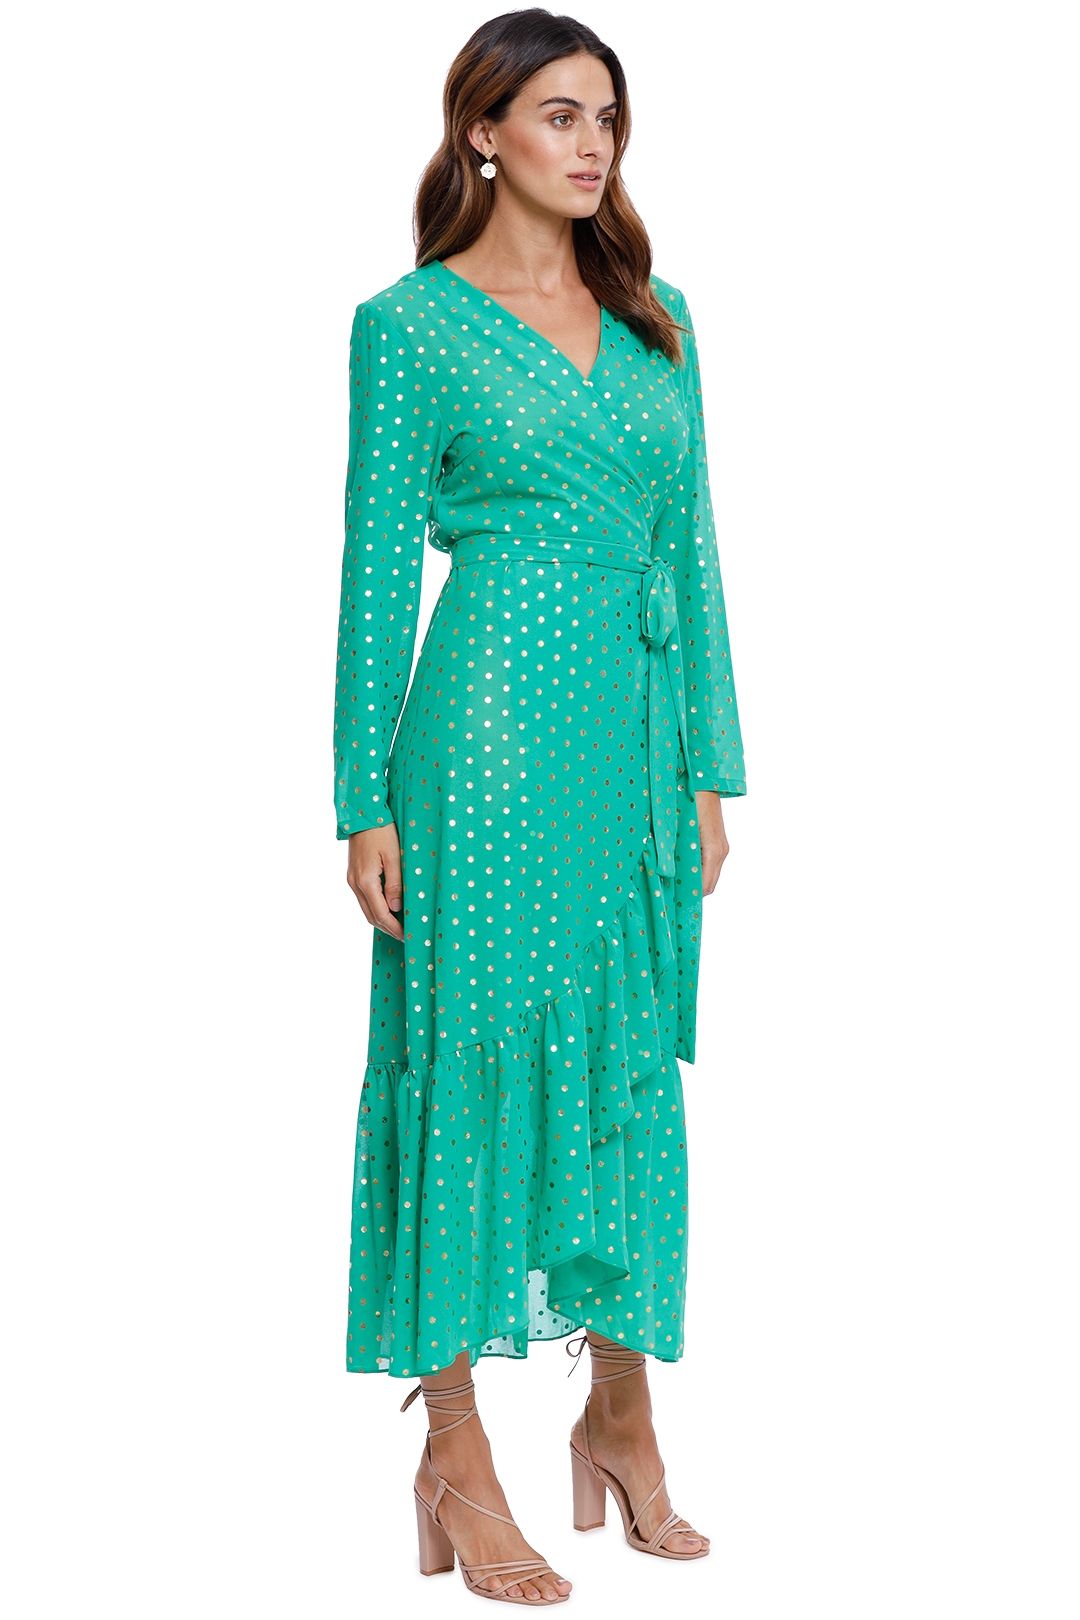 Never Fully Dressed Foil Spot Green Wrap Dress polka dot